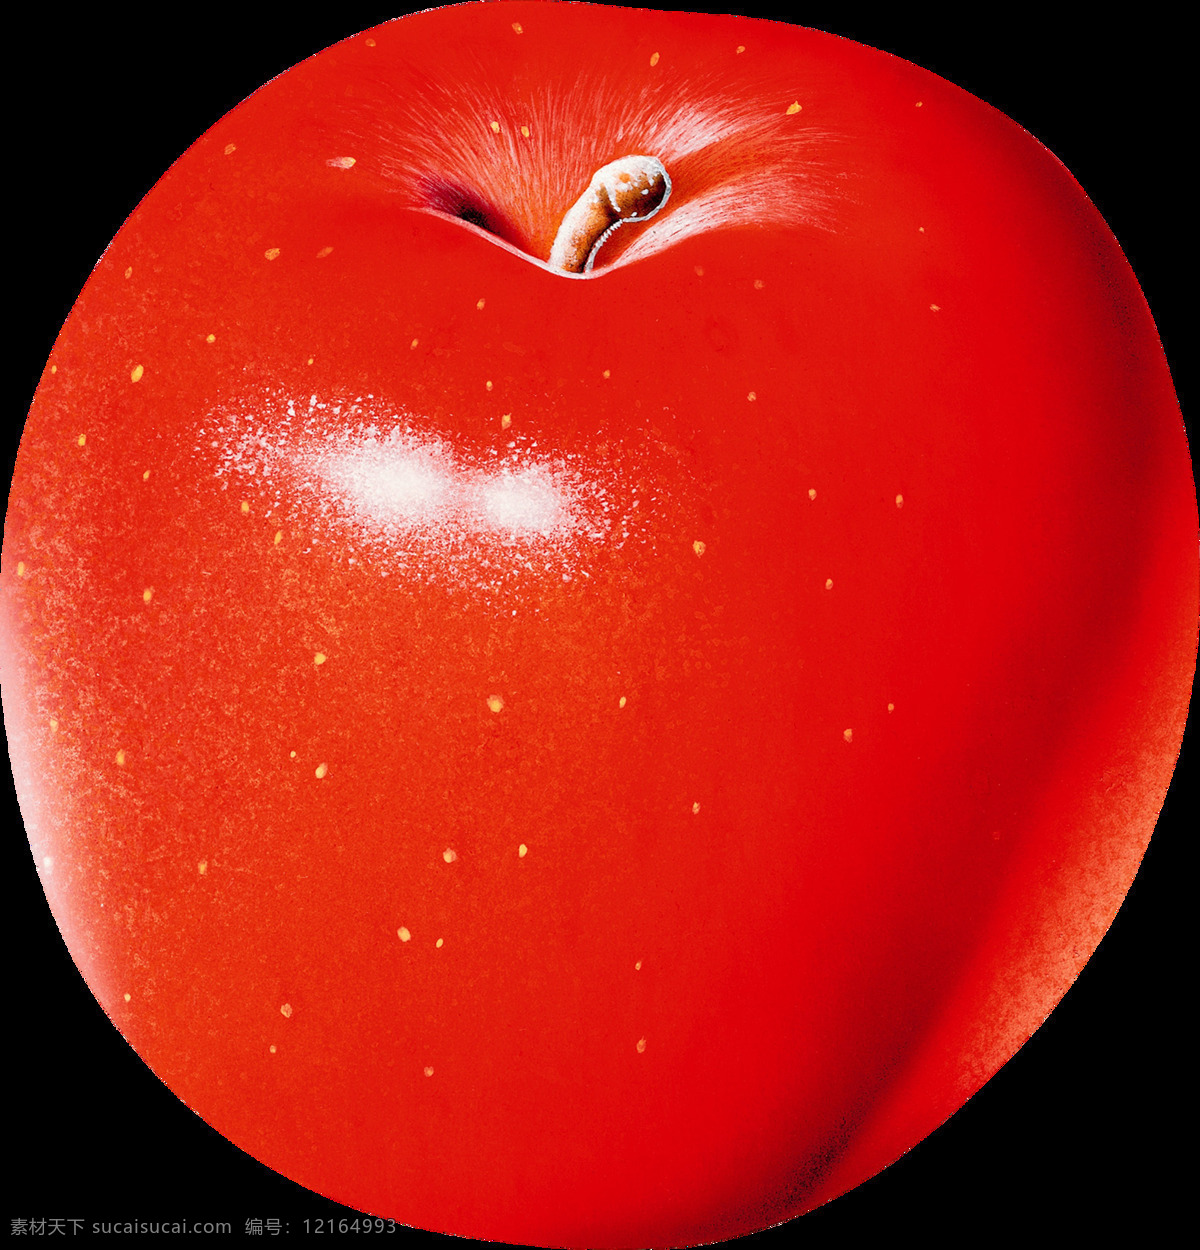 漂亮 红色 苹果 免 抠 透明 图 层 青苹果 苹果卡通图片 苹果logo 苹果简笔画 壁纸高清 大苹果 红苹果 苹果梨树 苹果商标 金毛苹果 青苹果榨汁